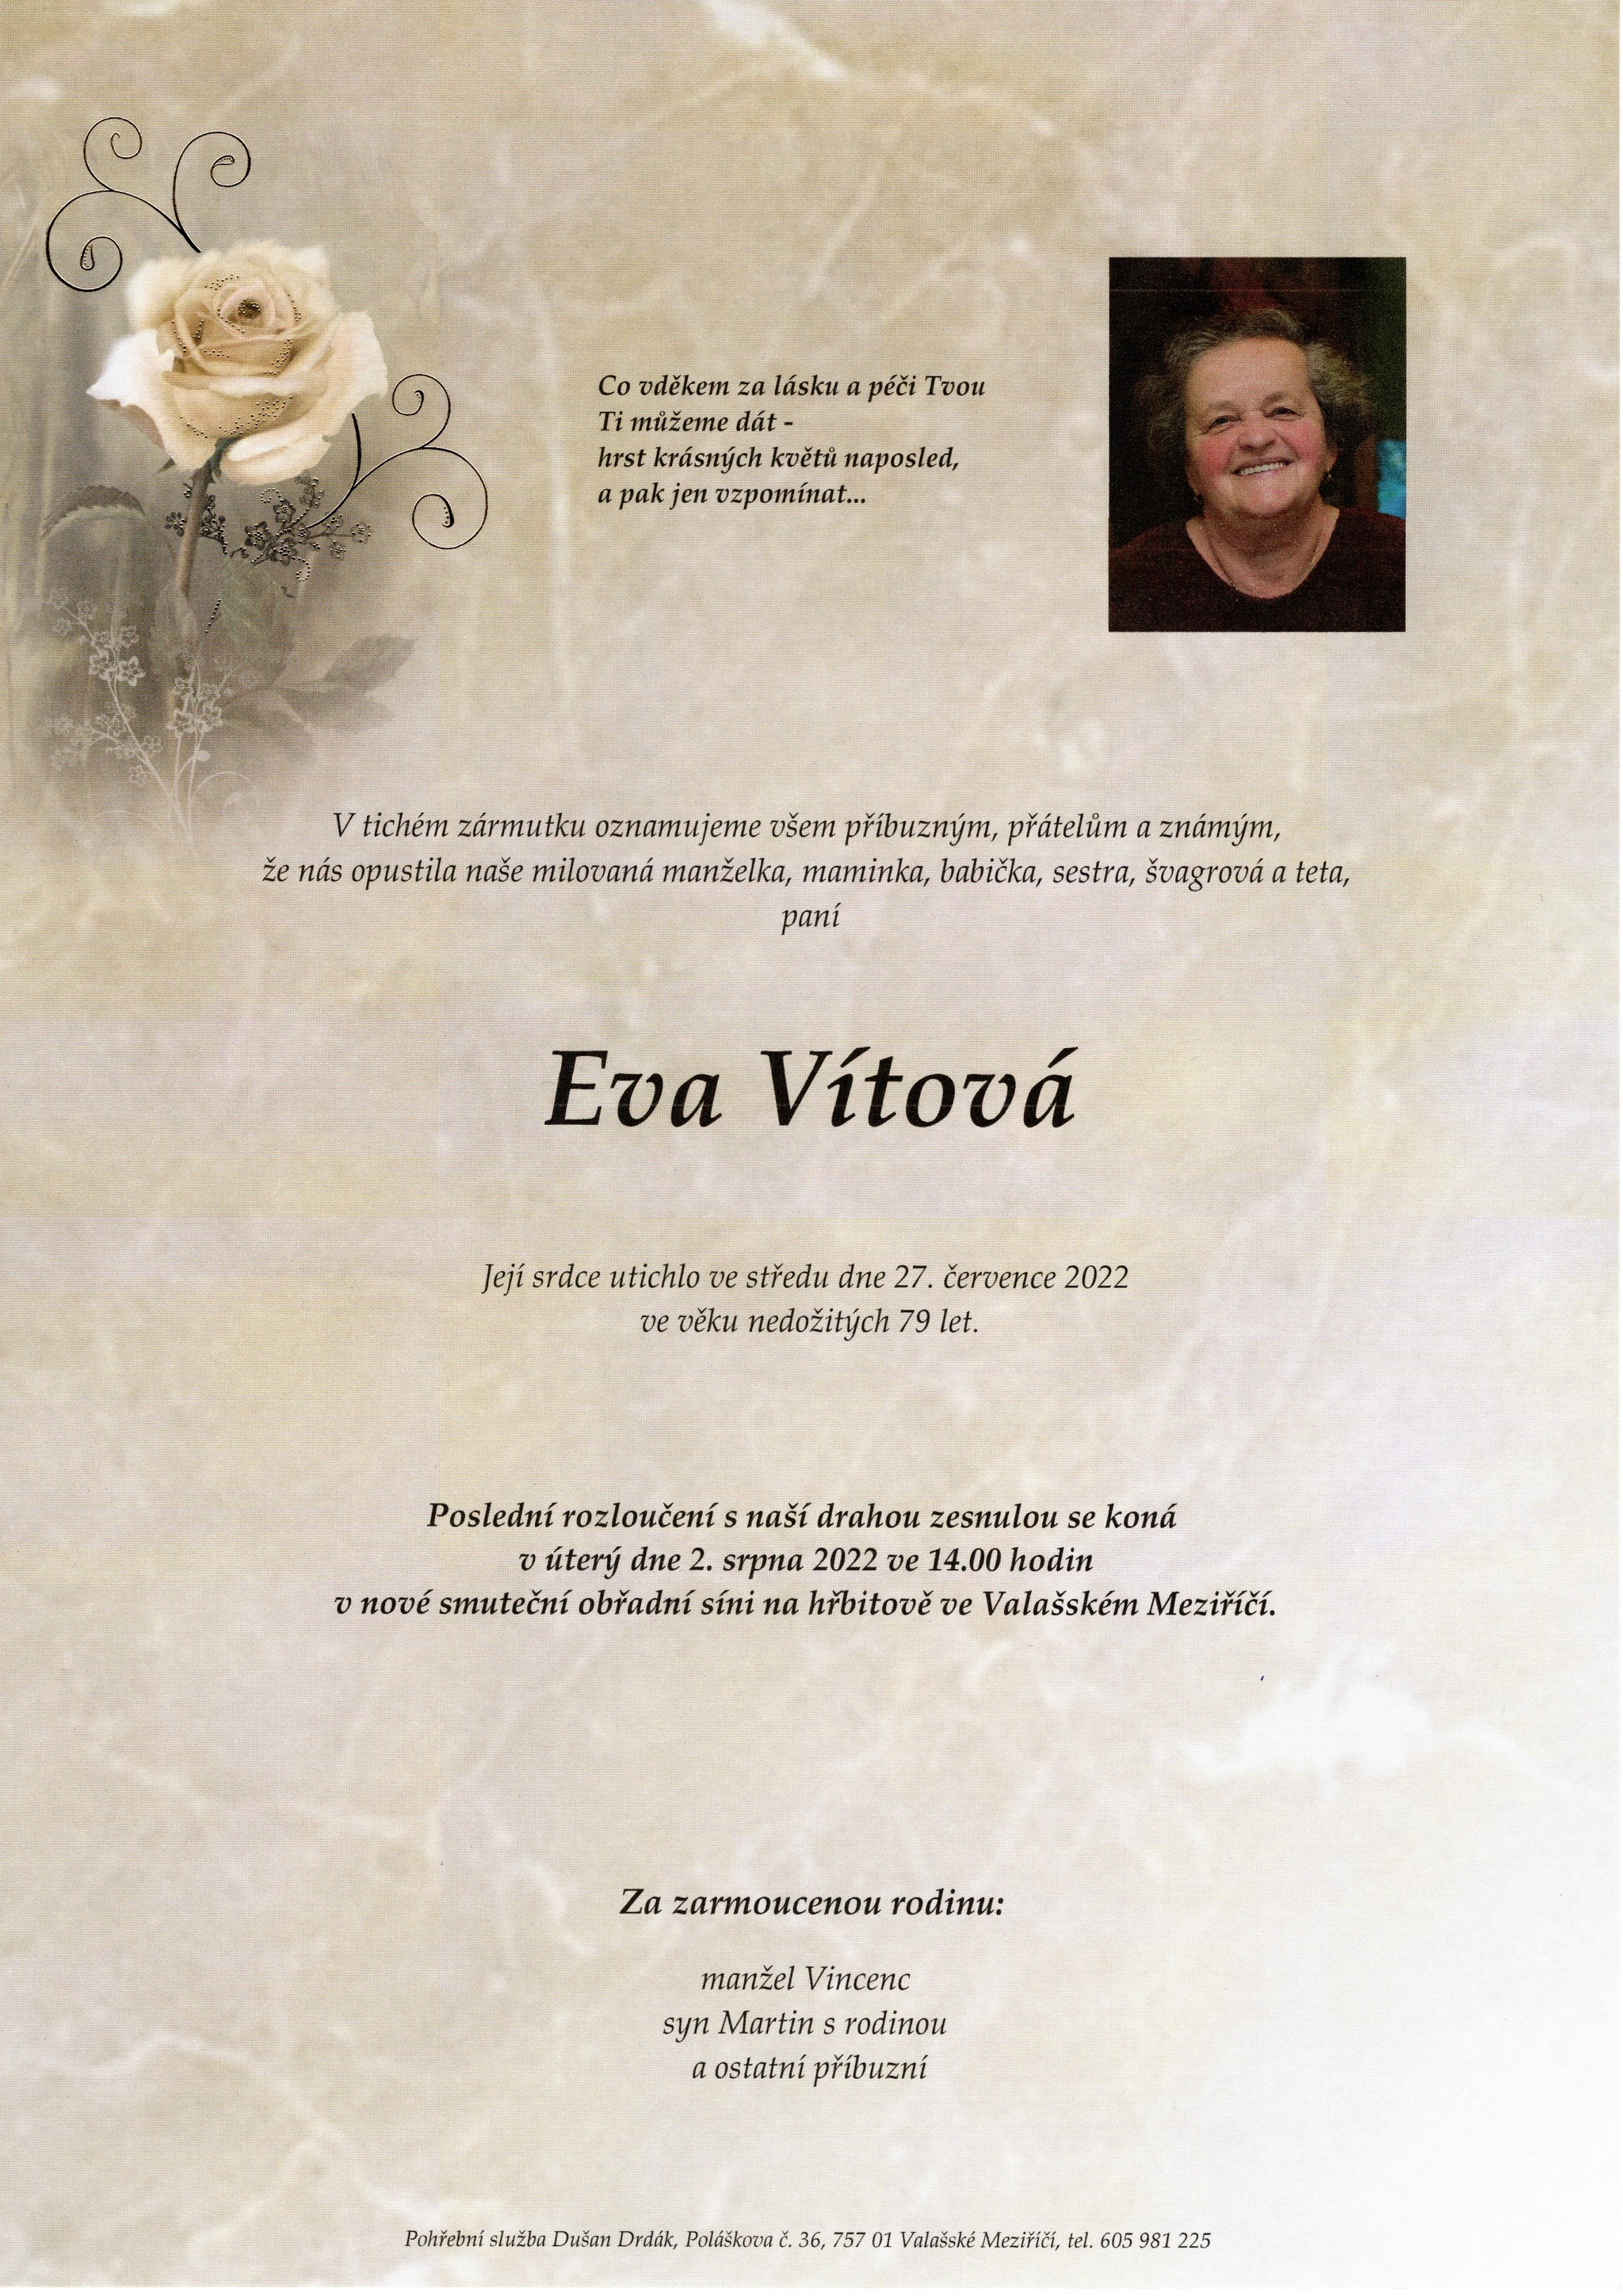 Eva Vítová